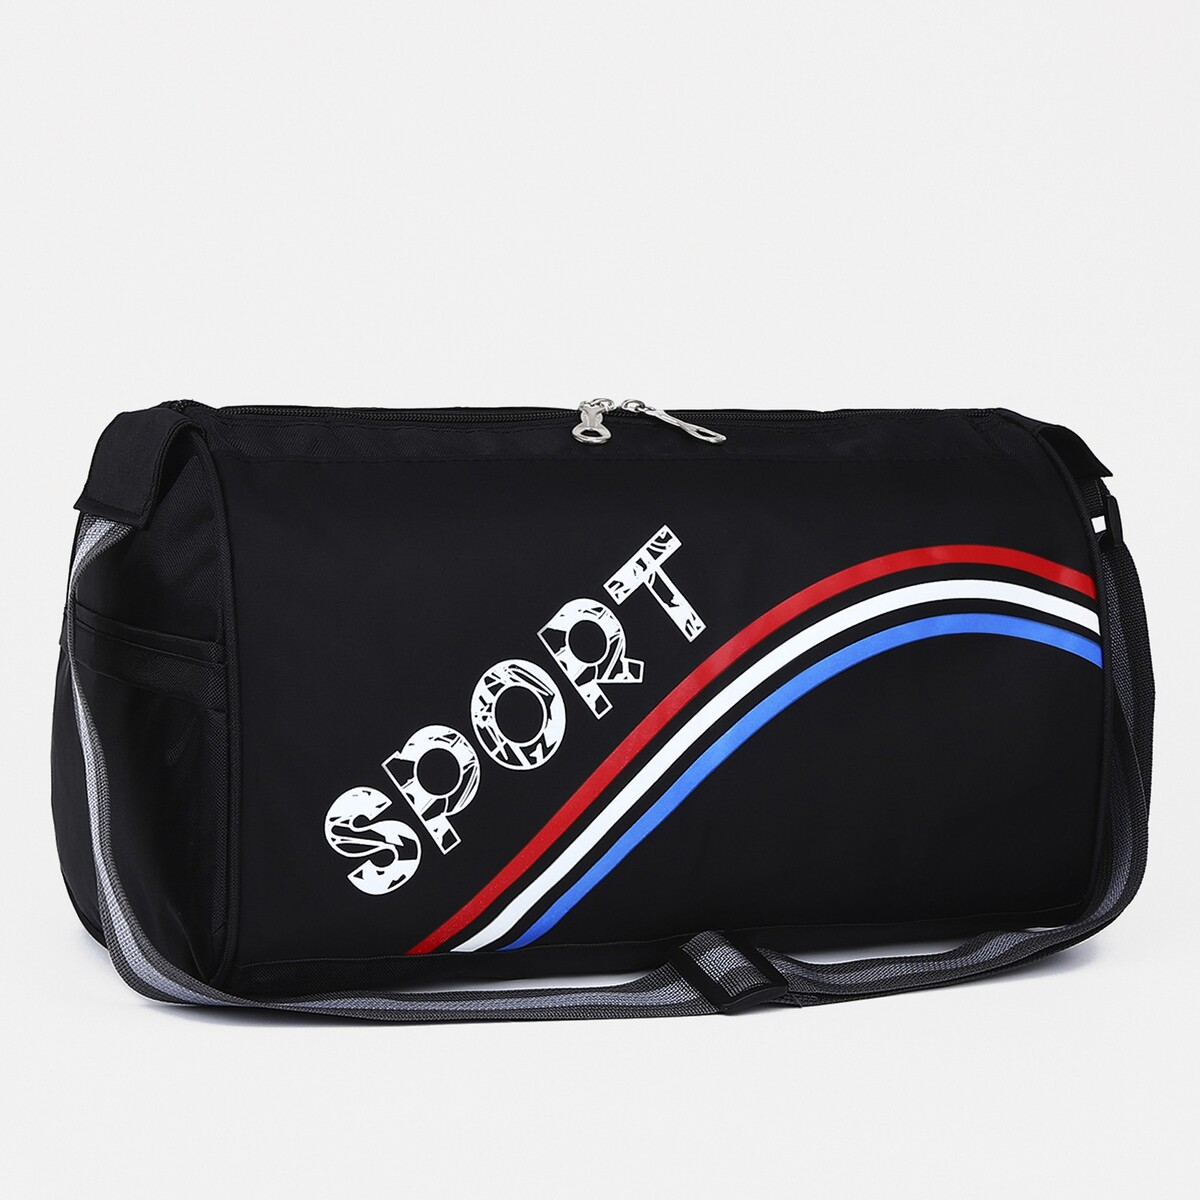 Сумка спортивная на молнии, длинный ремень, цвет черный/триколор сумка спортивная футбол 40х21х24 см